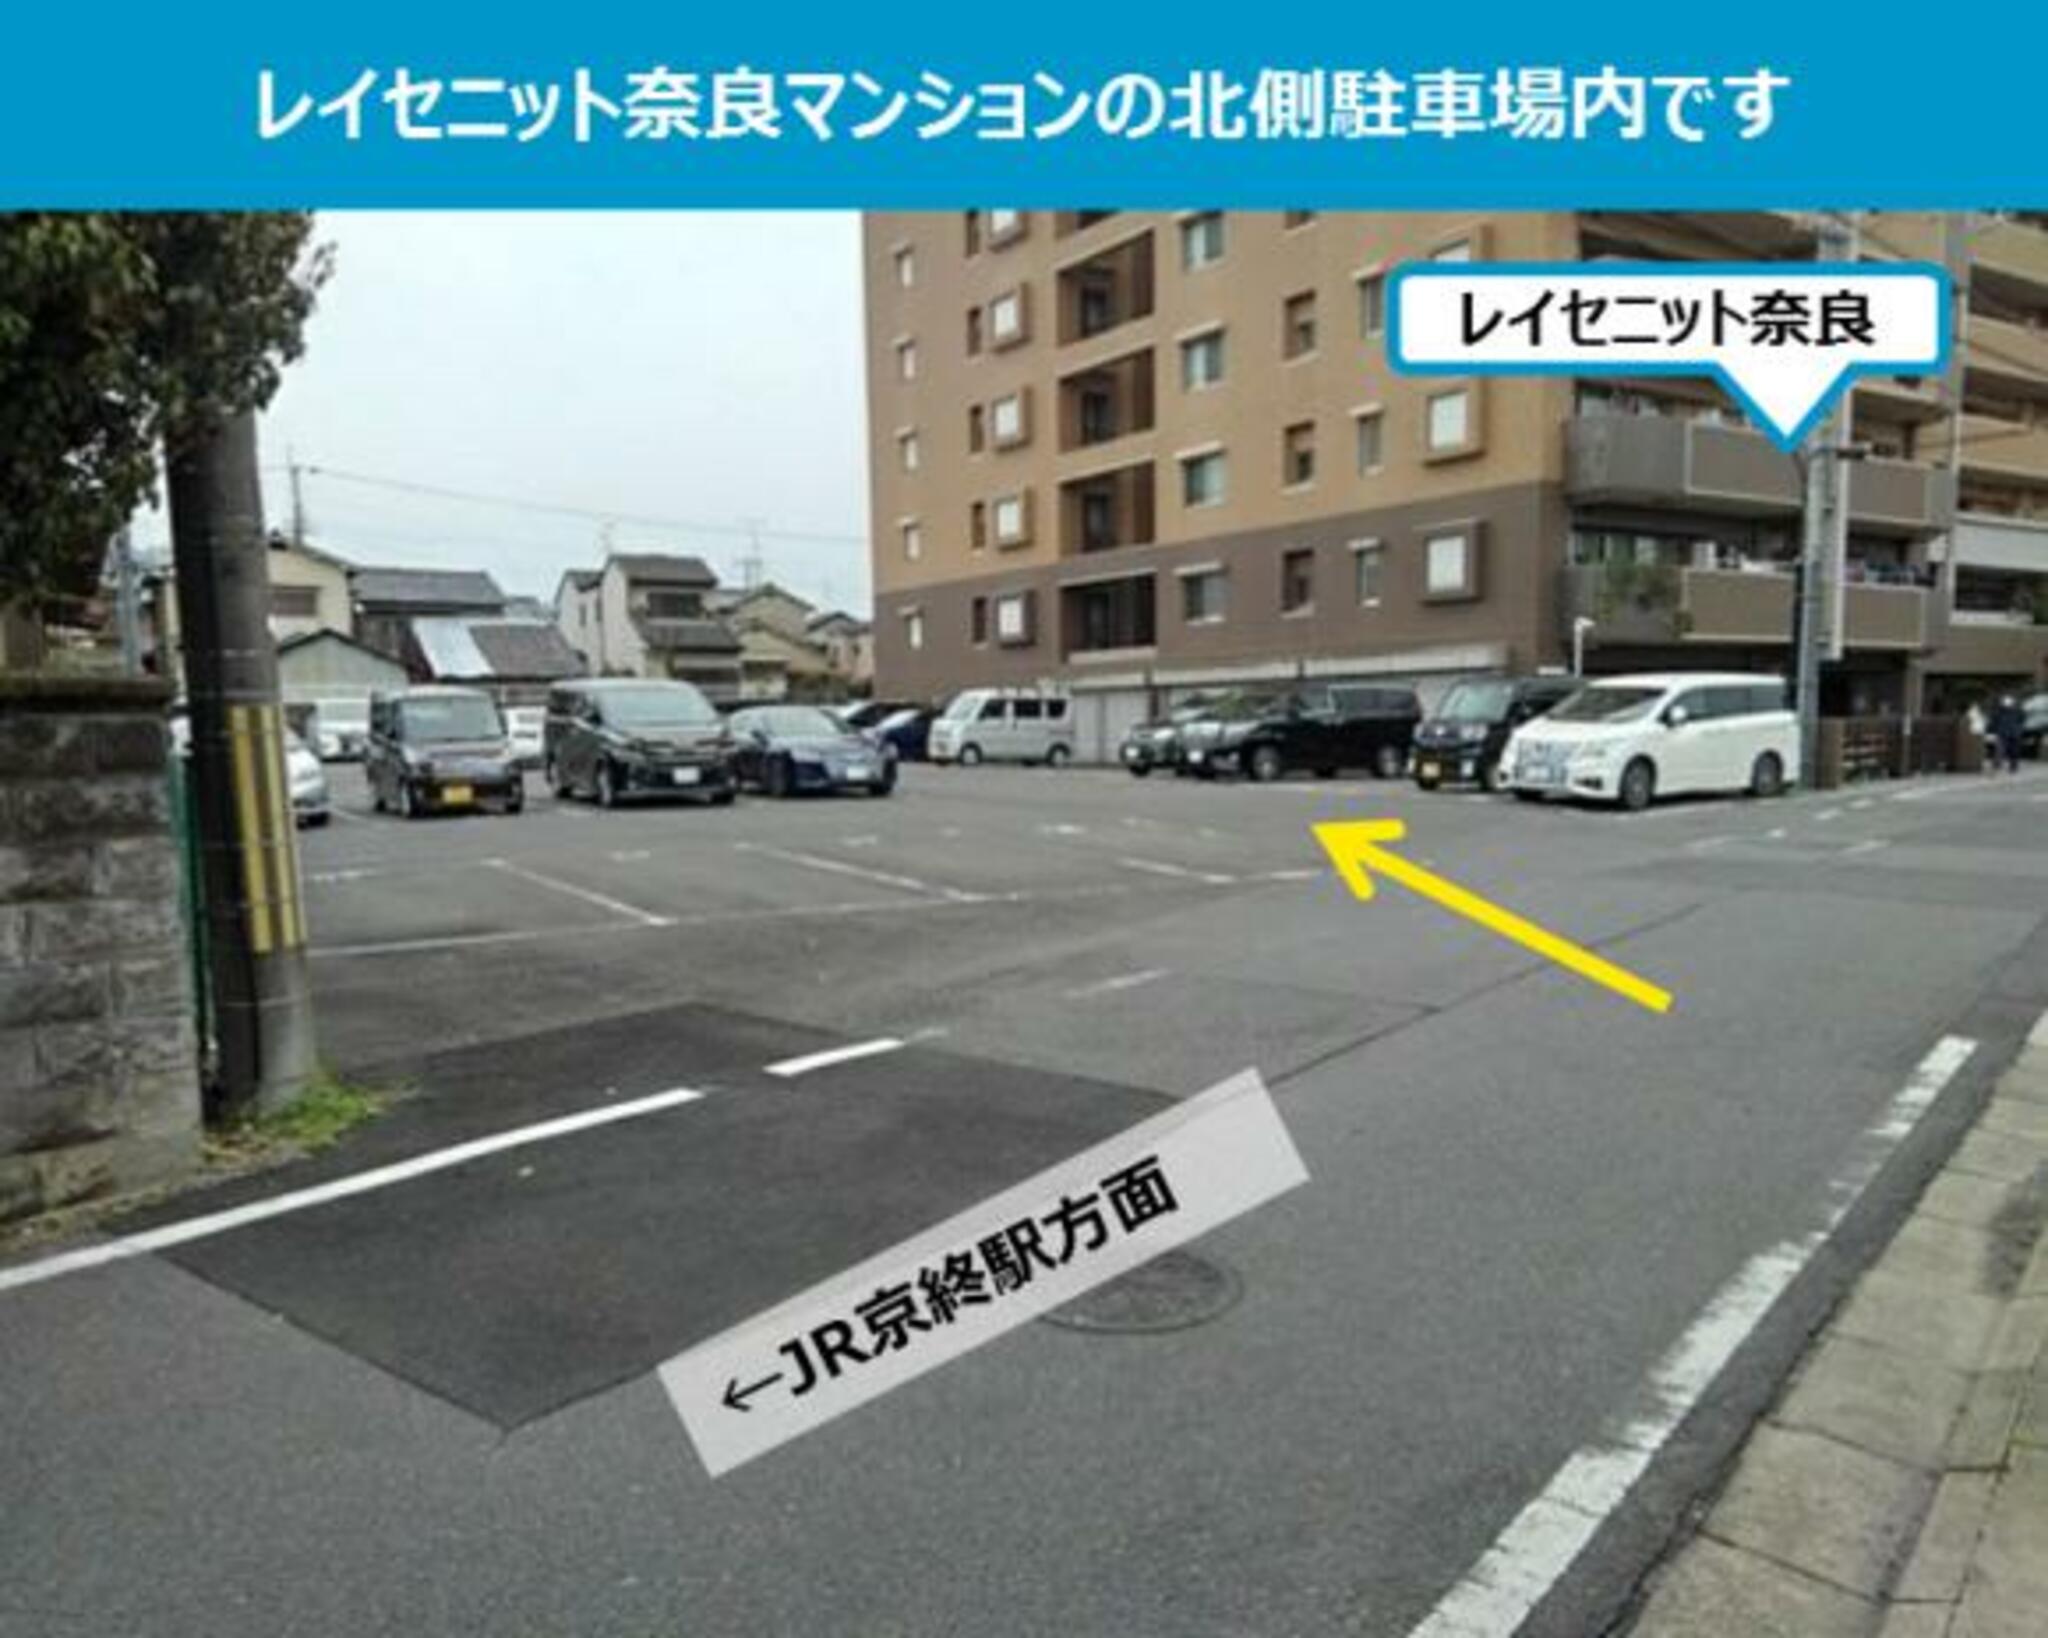 タイムズのB レイセニット奈良 第二駐車場の代表写真2